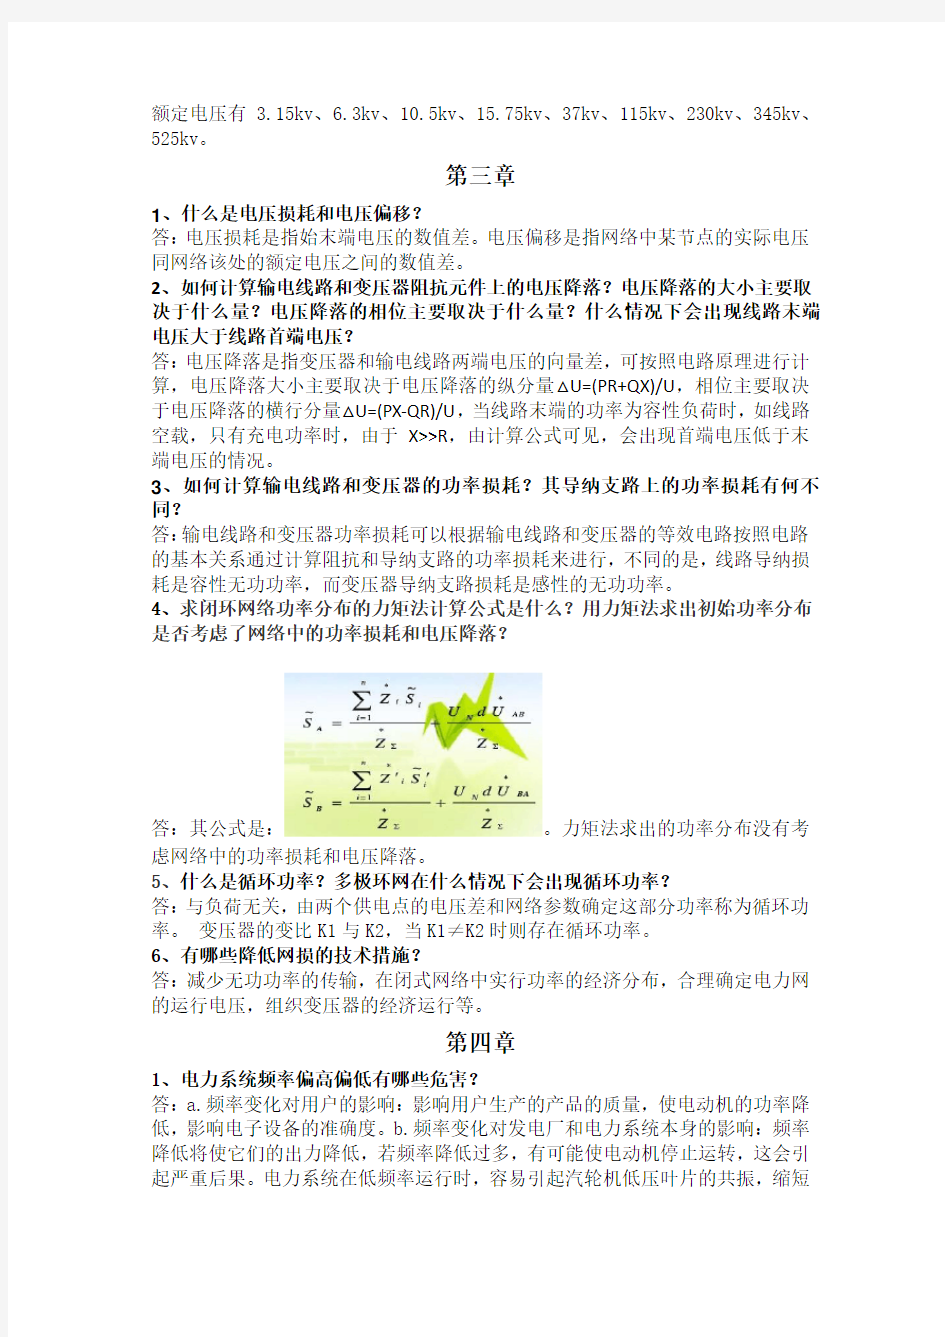 电力系统分析理论(第二版_刘天琪_邱晓燕)课后思考题答案(不包括计算)